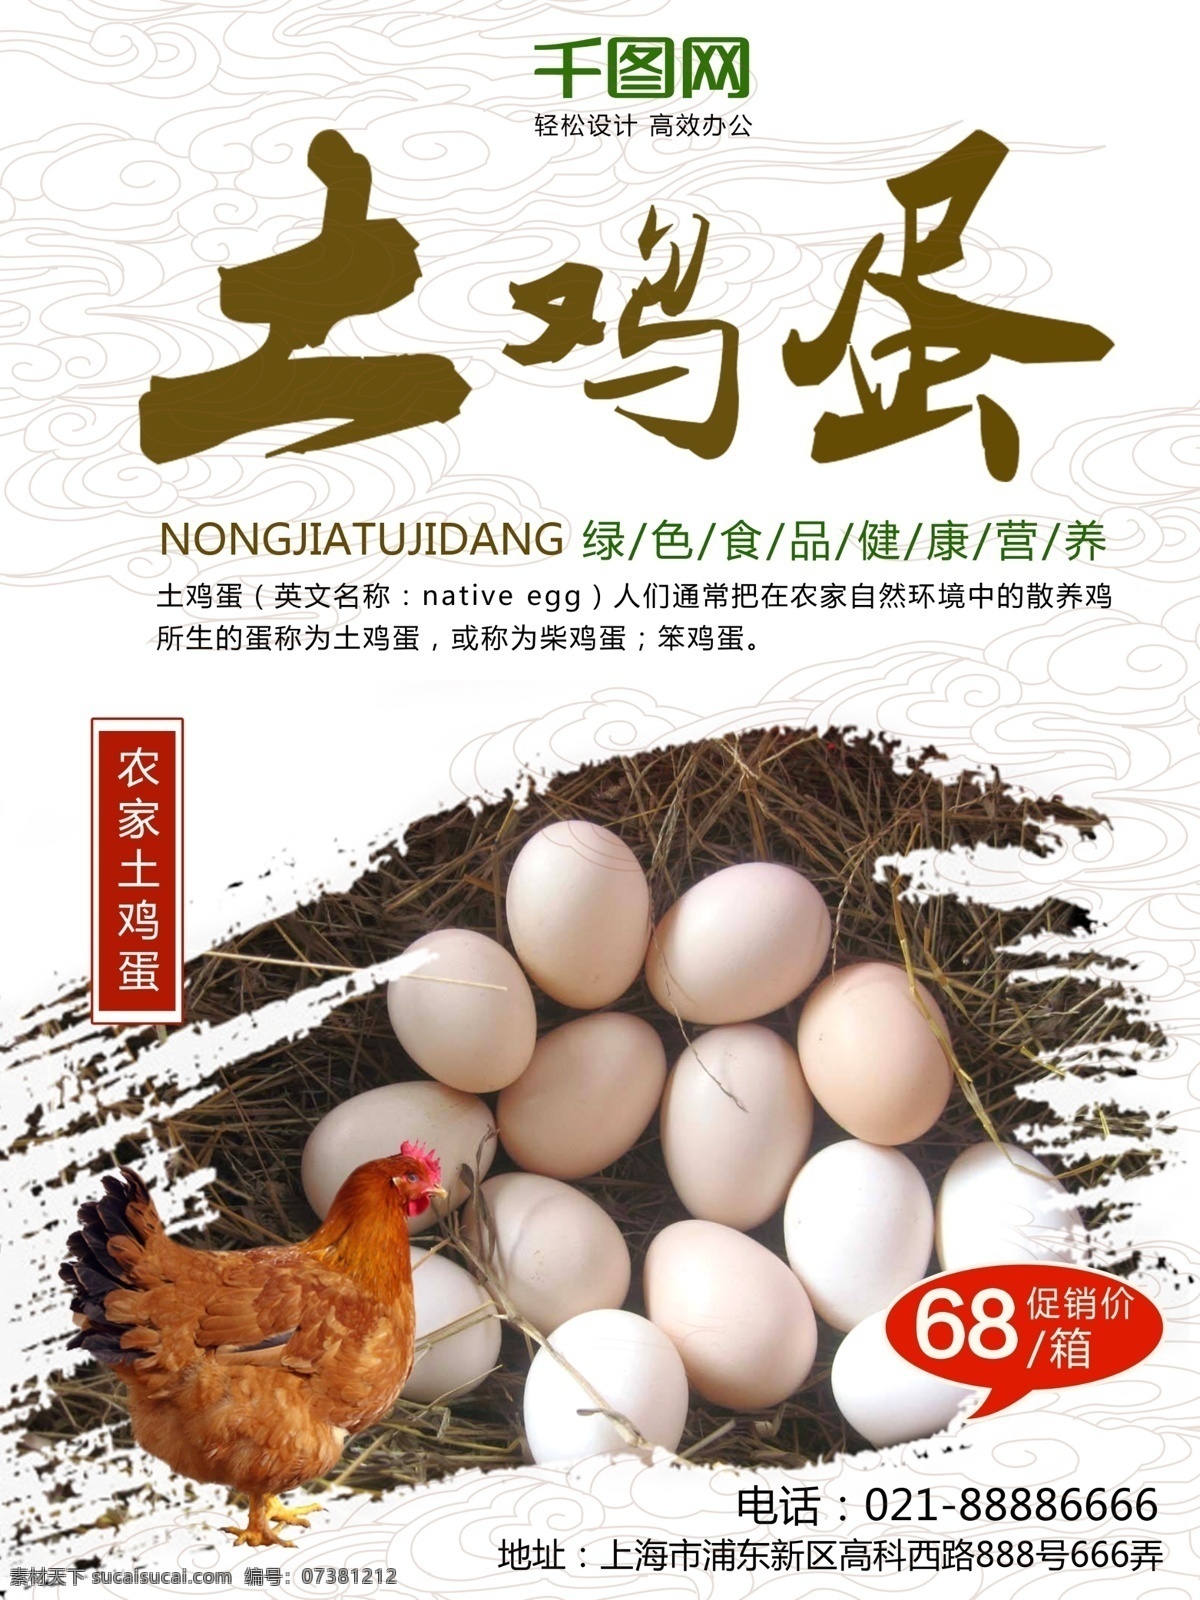 浅色 简约 商城 农家 土 鸡蛋 促销 海报 农家土鸡蛋 促销海报 土鸡蛋促销